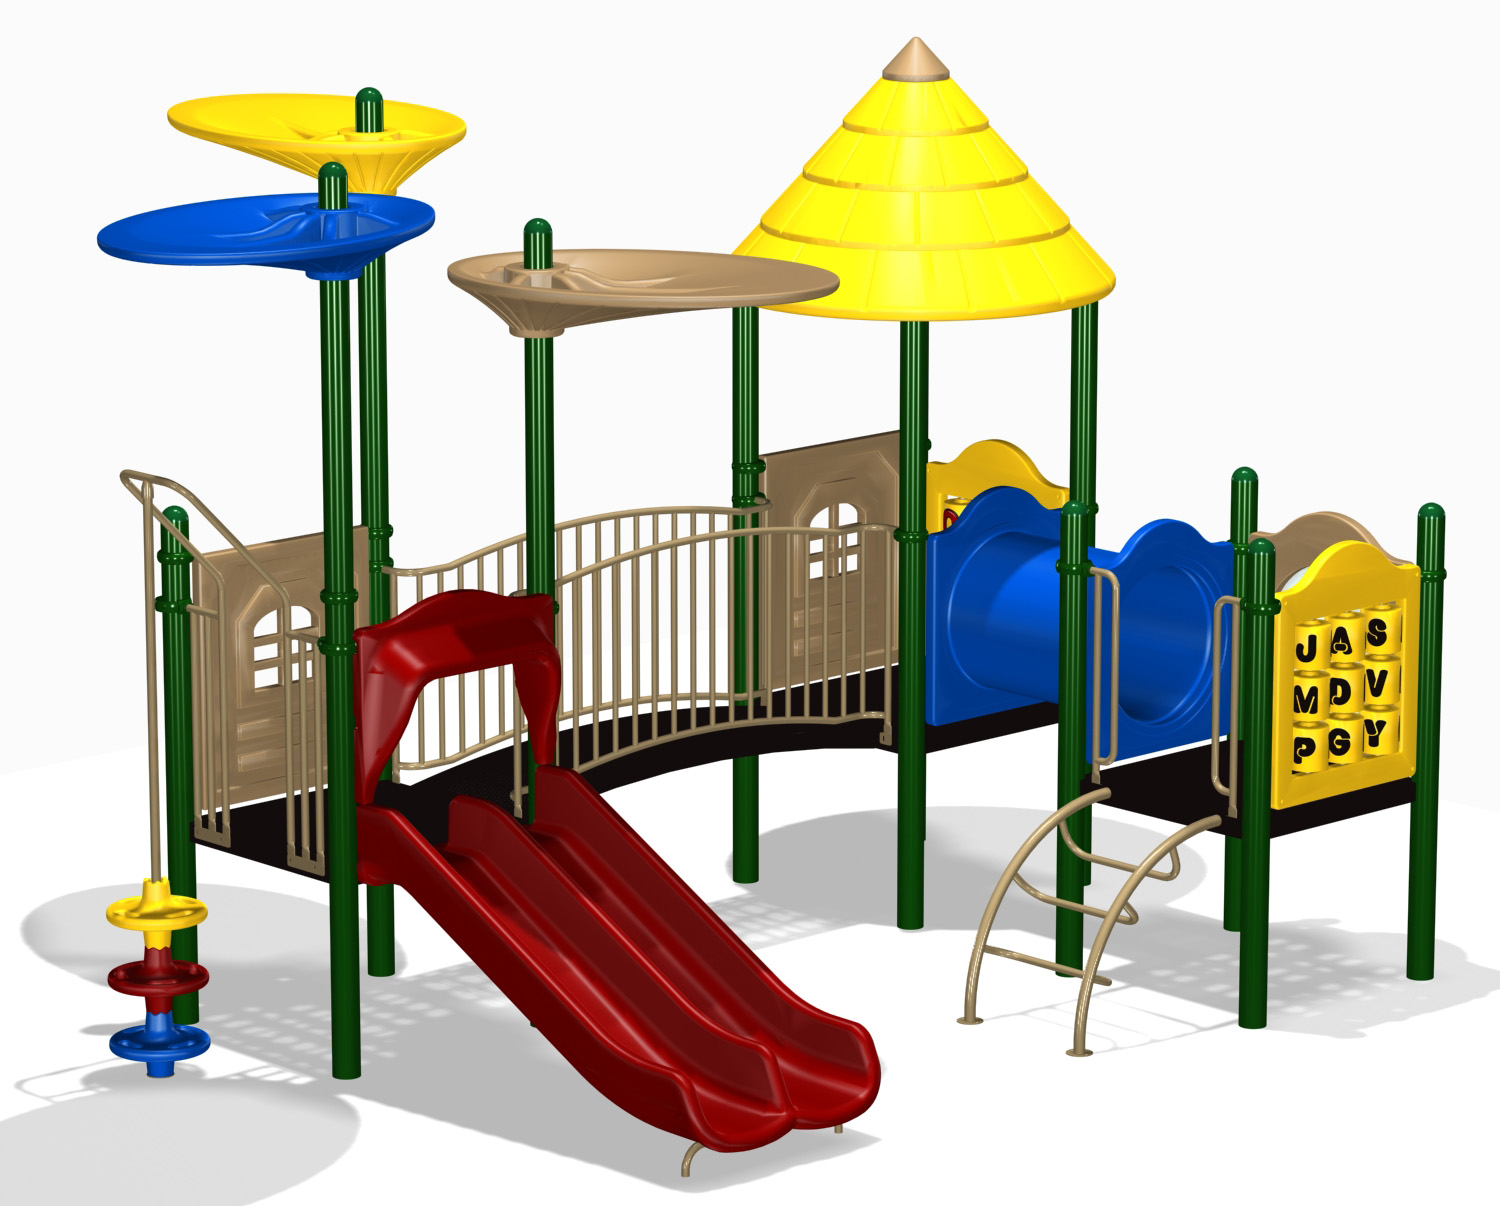 clipart park preschool playground